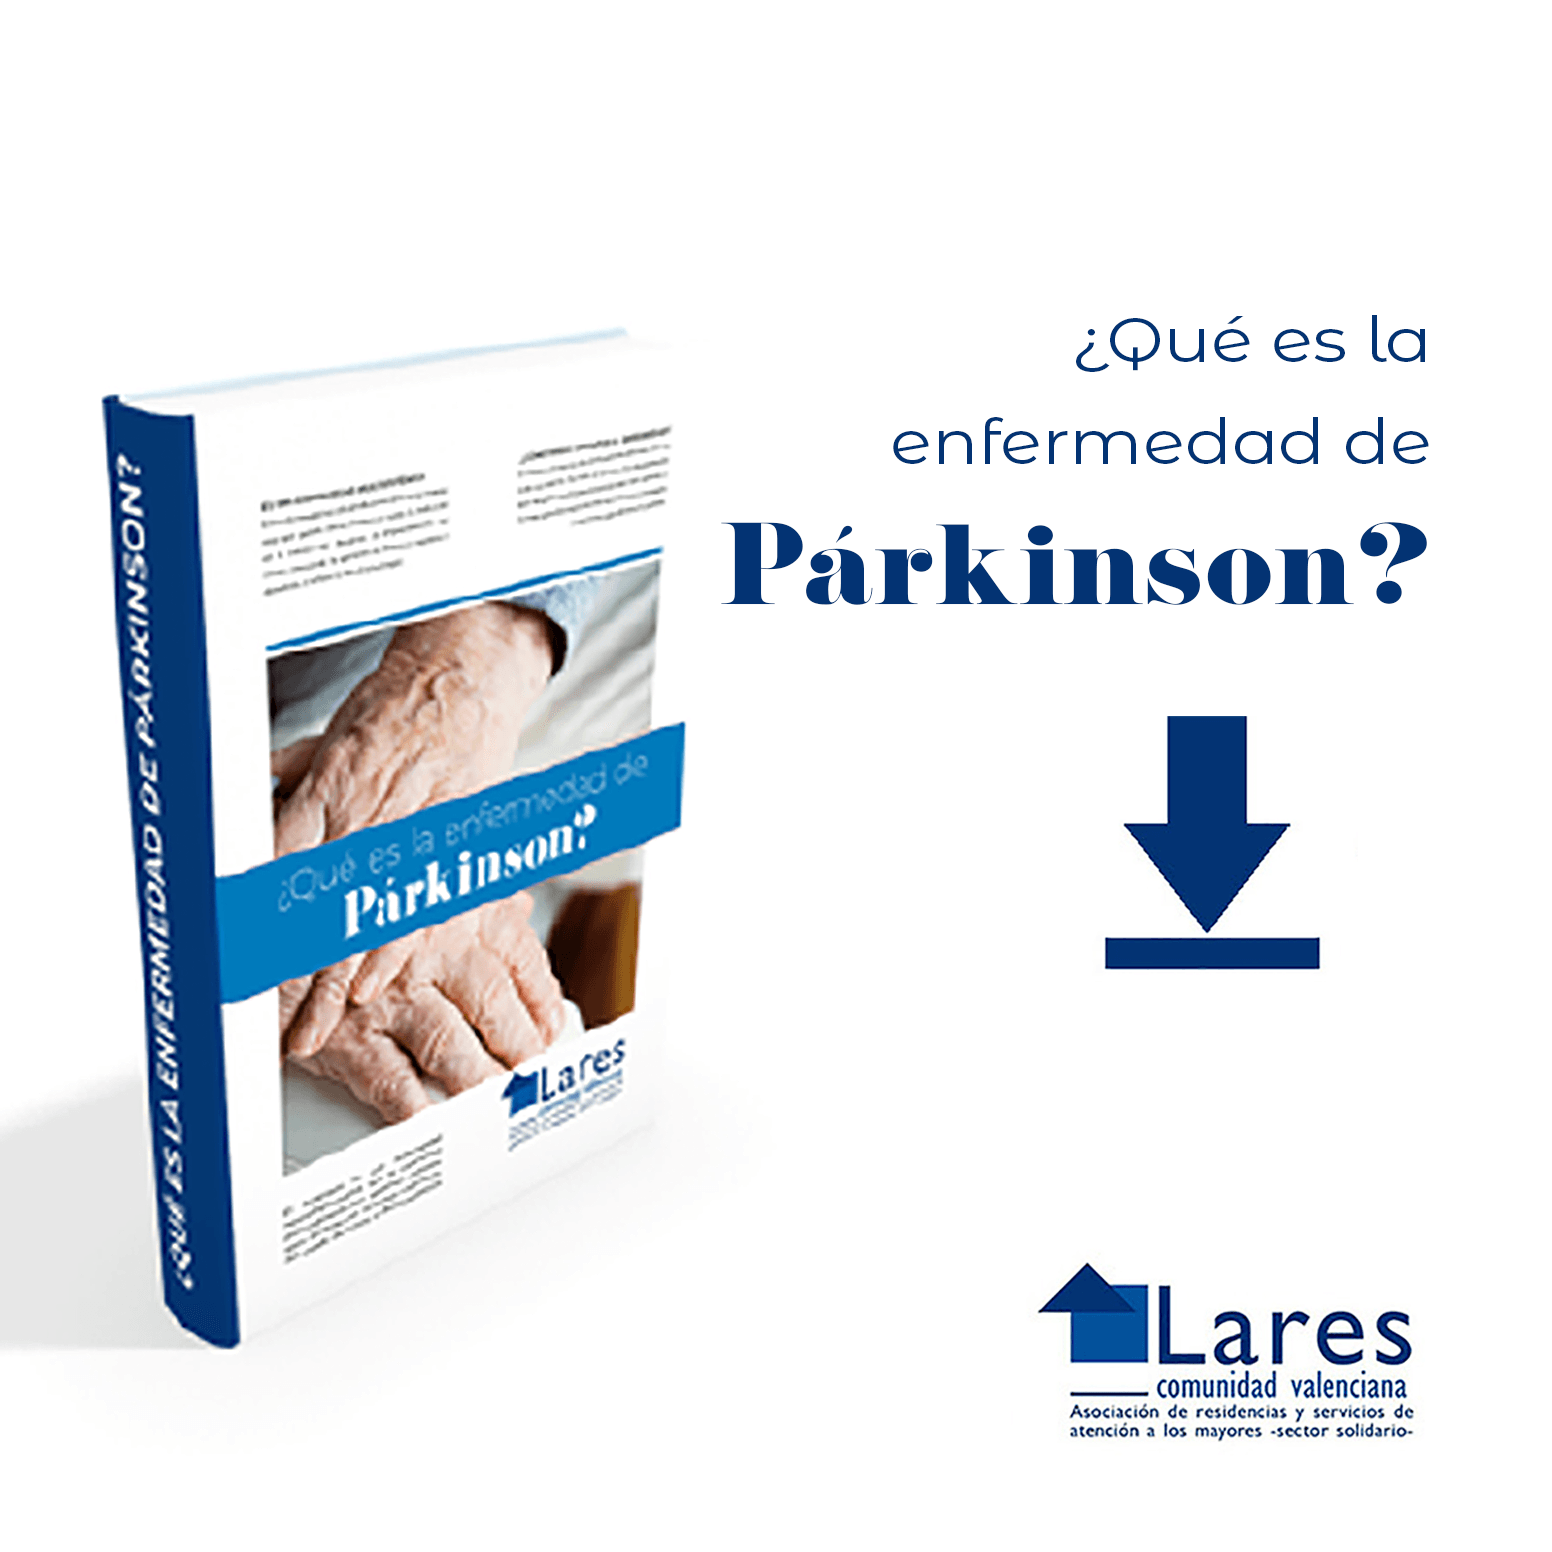 20190129 LARES CV 1200x1200 Banner Parkinson - Los 10 Síntomas iniciales del Parkinson